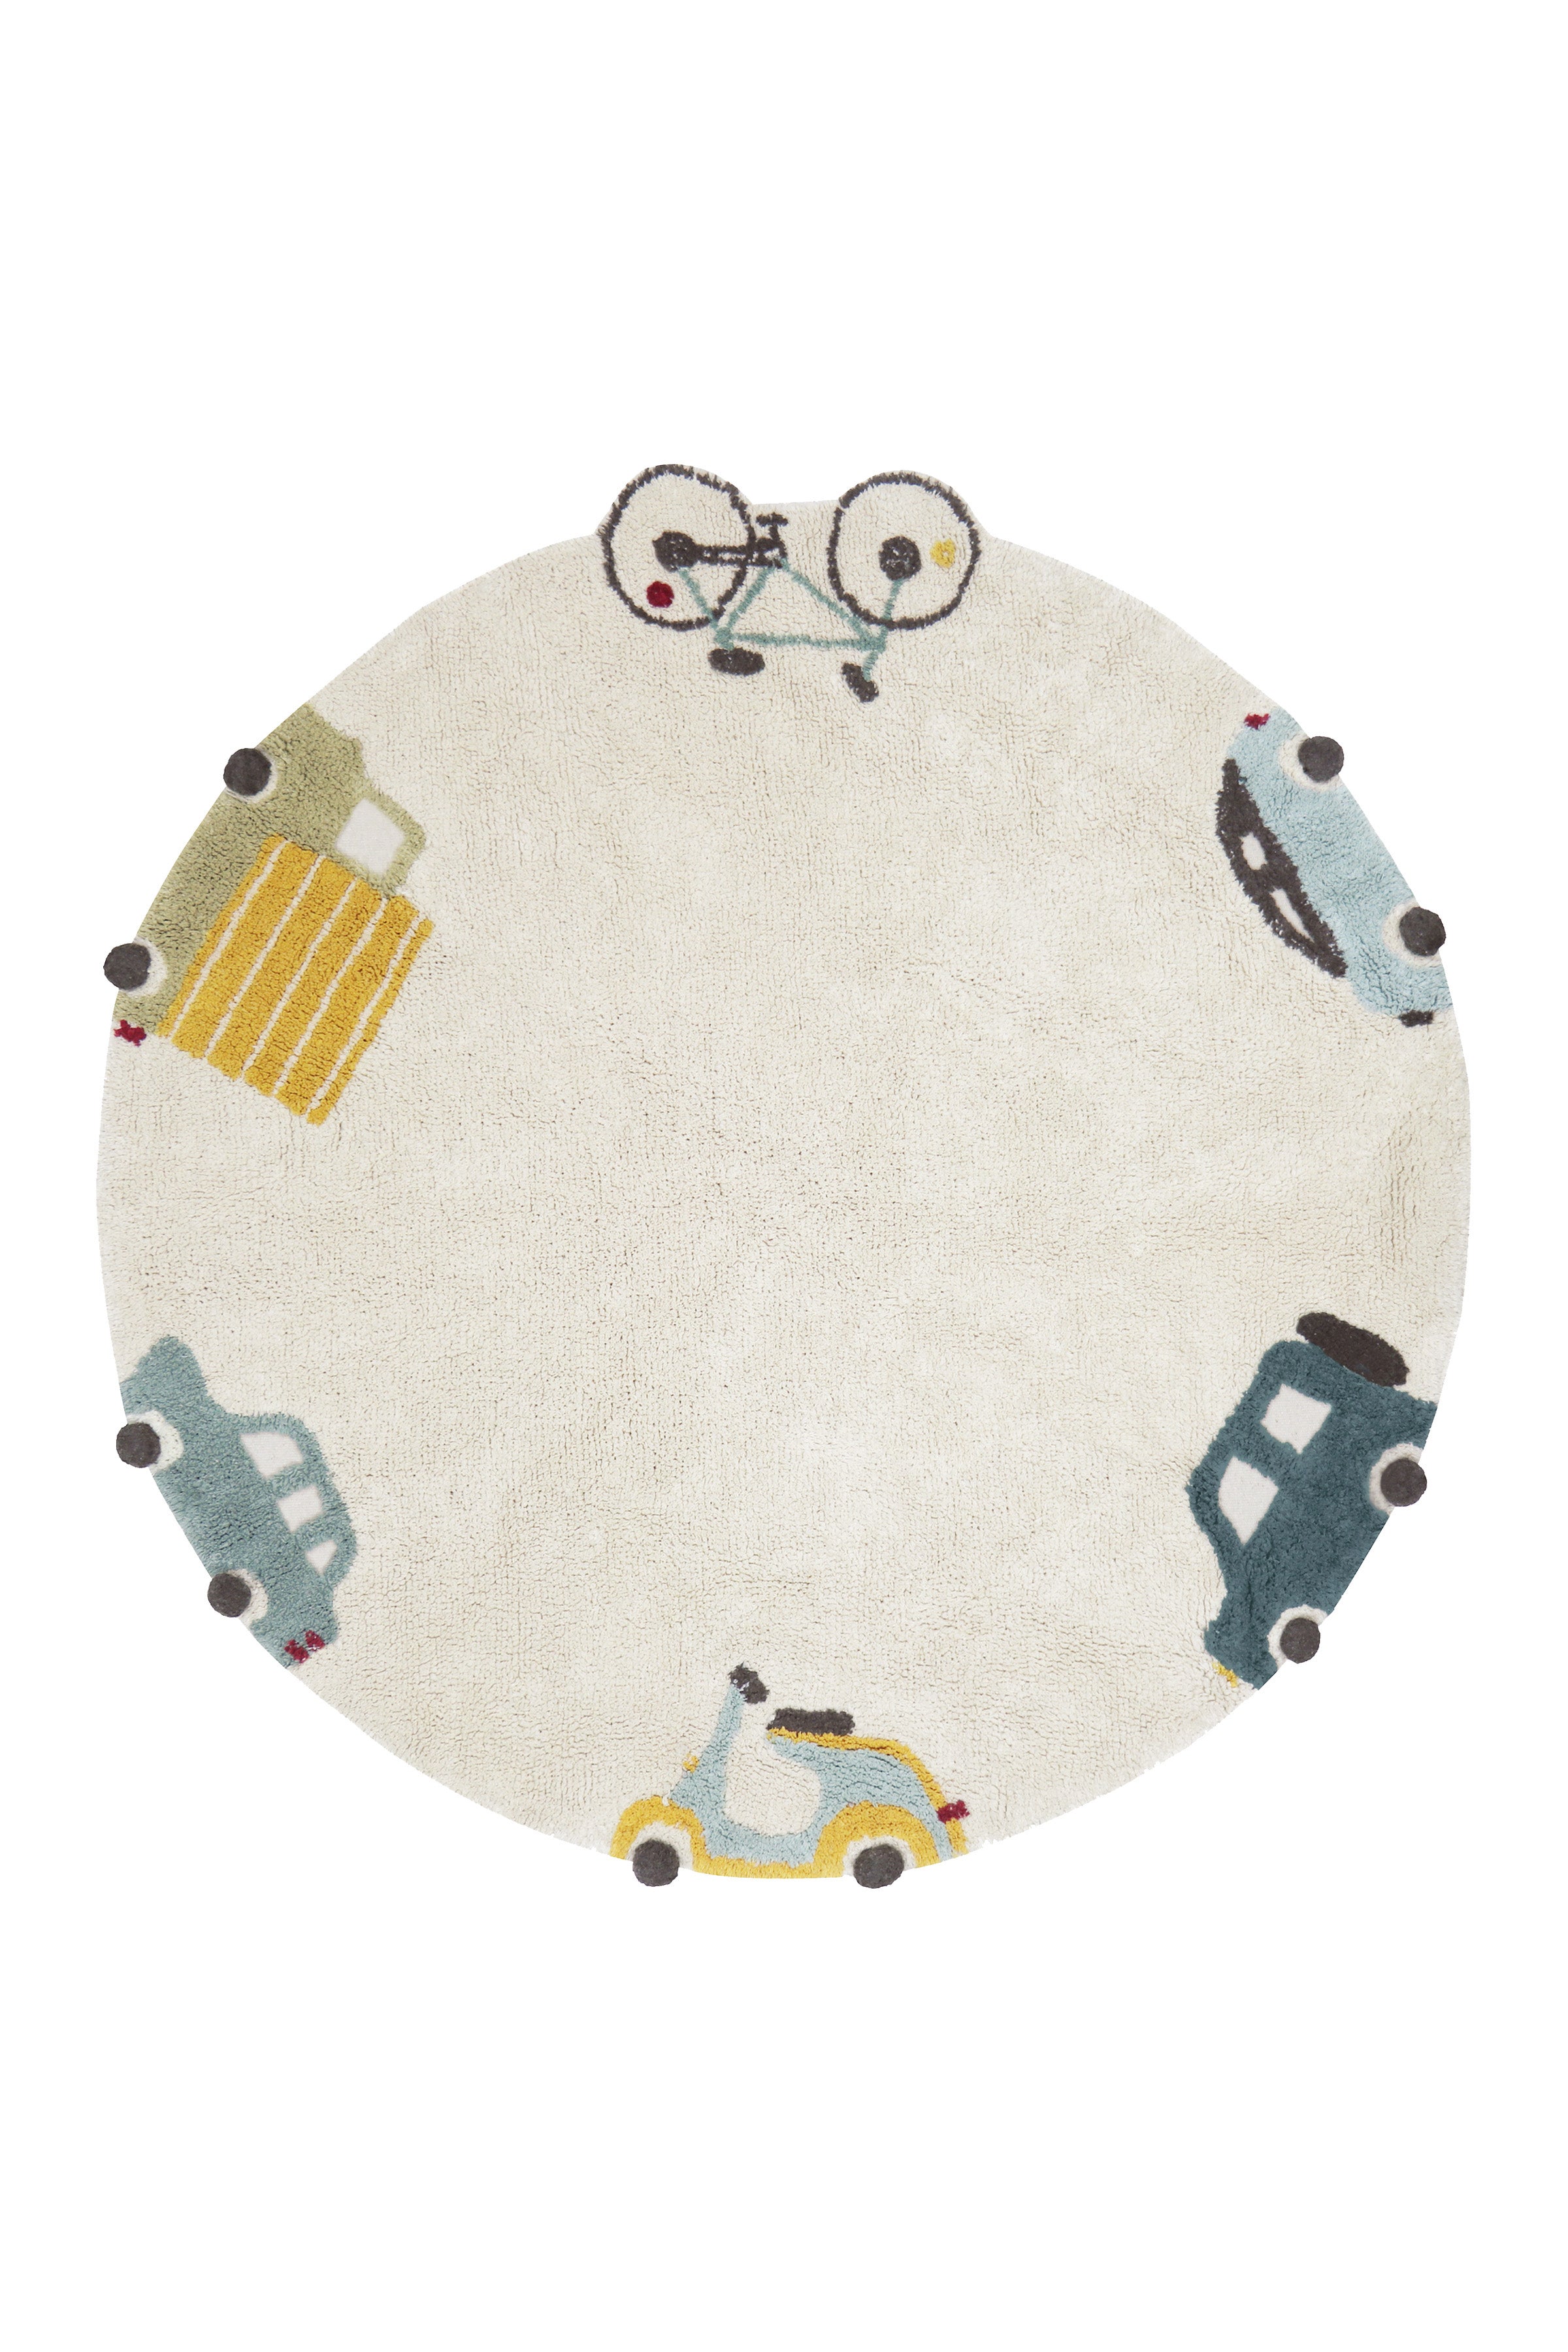 Round cream childs rug with vehicle motifs